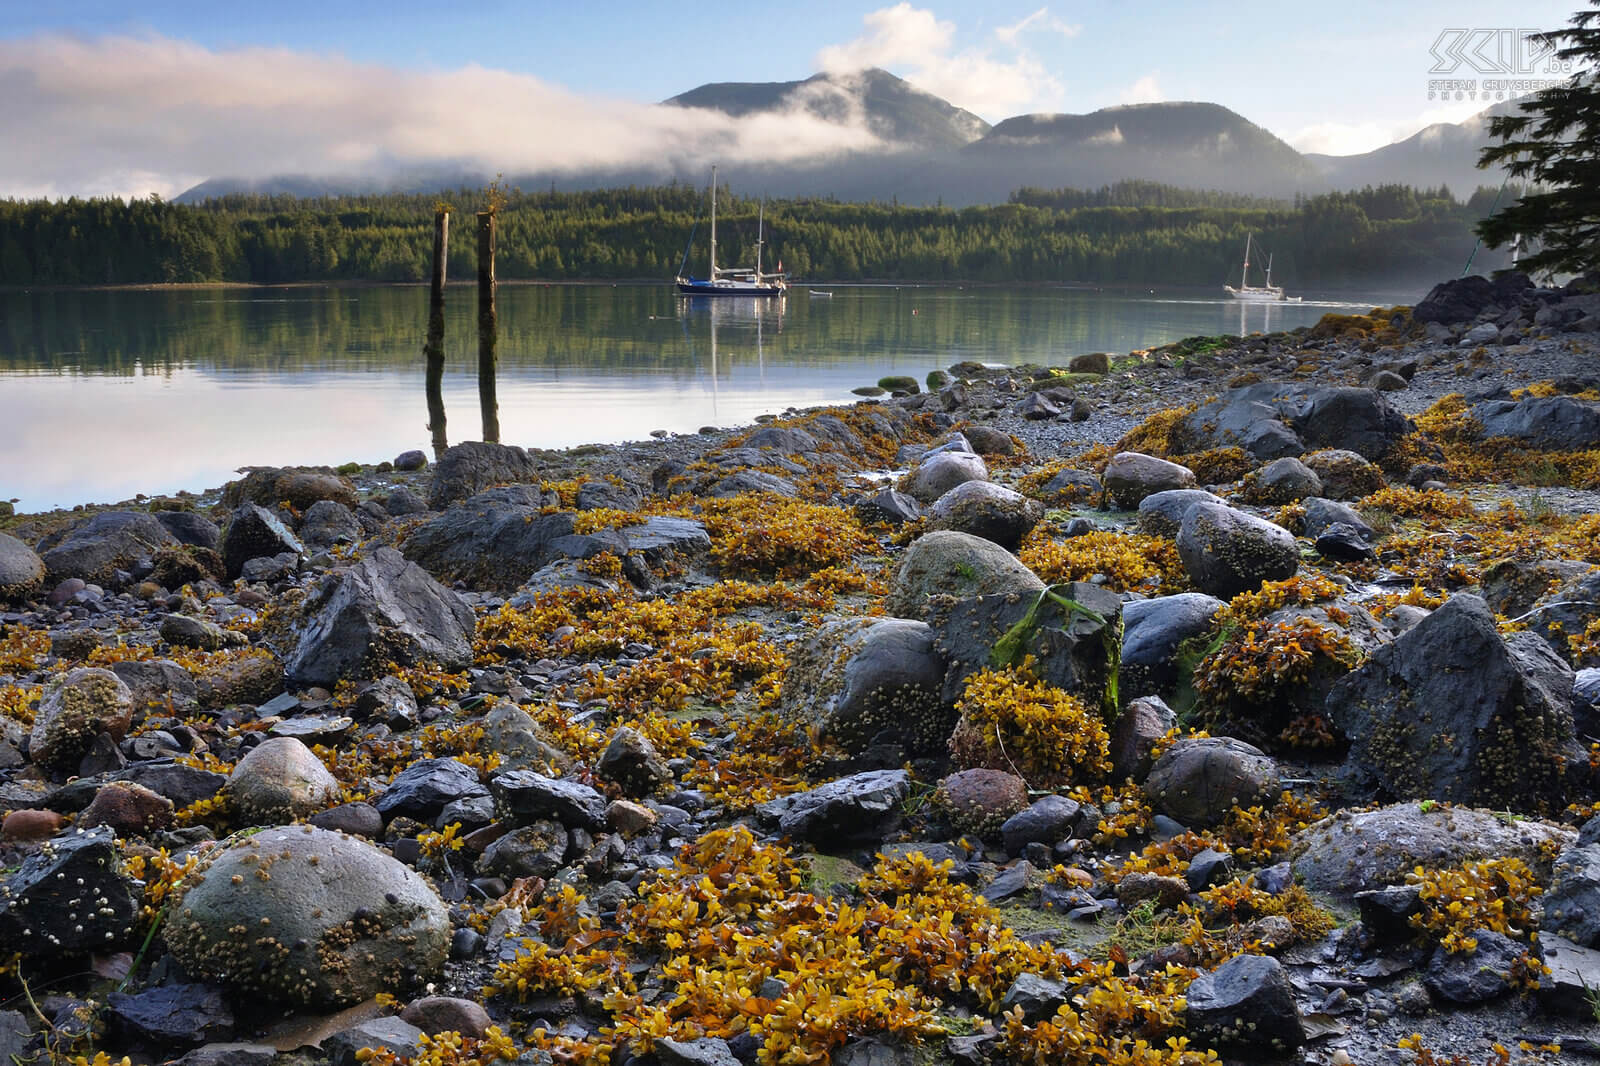 Ucluelet Ucluelet is een klein stadje aan de west kust van Vancouver Island omgeven door vele eilanden en prachtige ruige rotstranden met veel leven. Stefan Cruysberghs